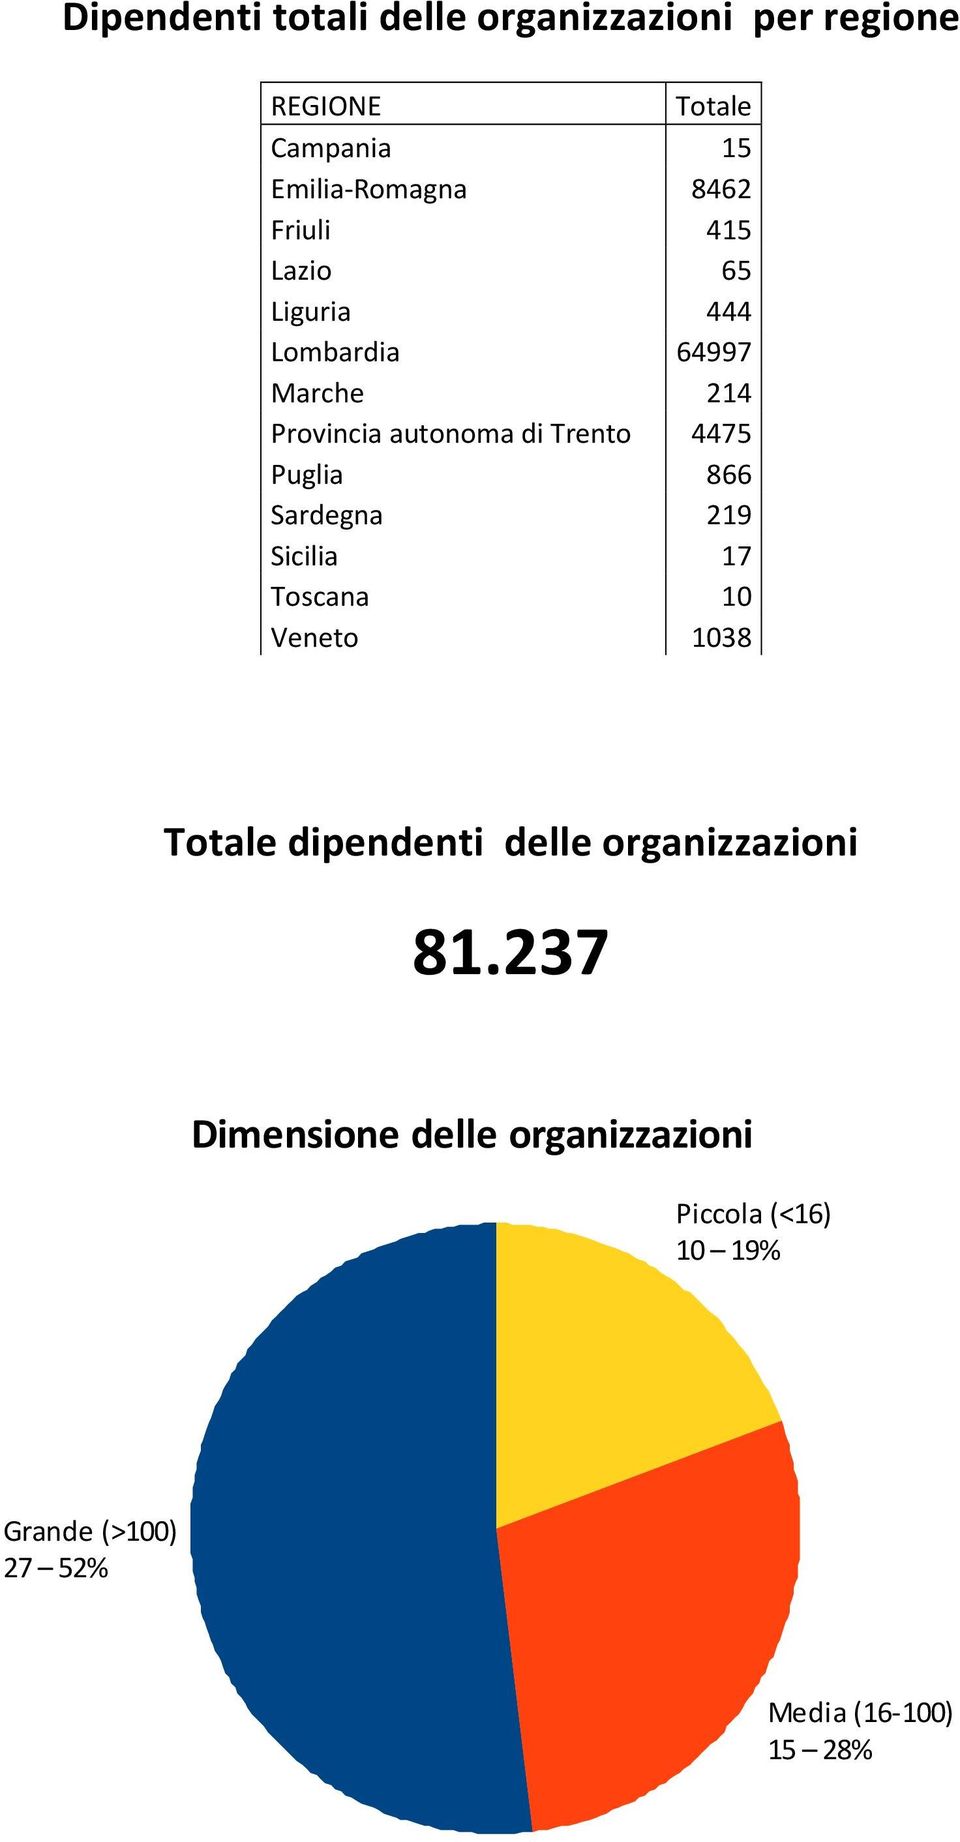 Puglia 866 Sardegna 219 Sicilia 17 Toscana 10 Veneto 1038 Totale dipendenti delle organizzazioni